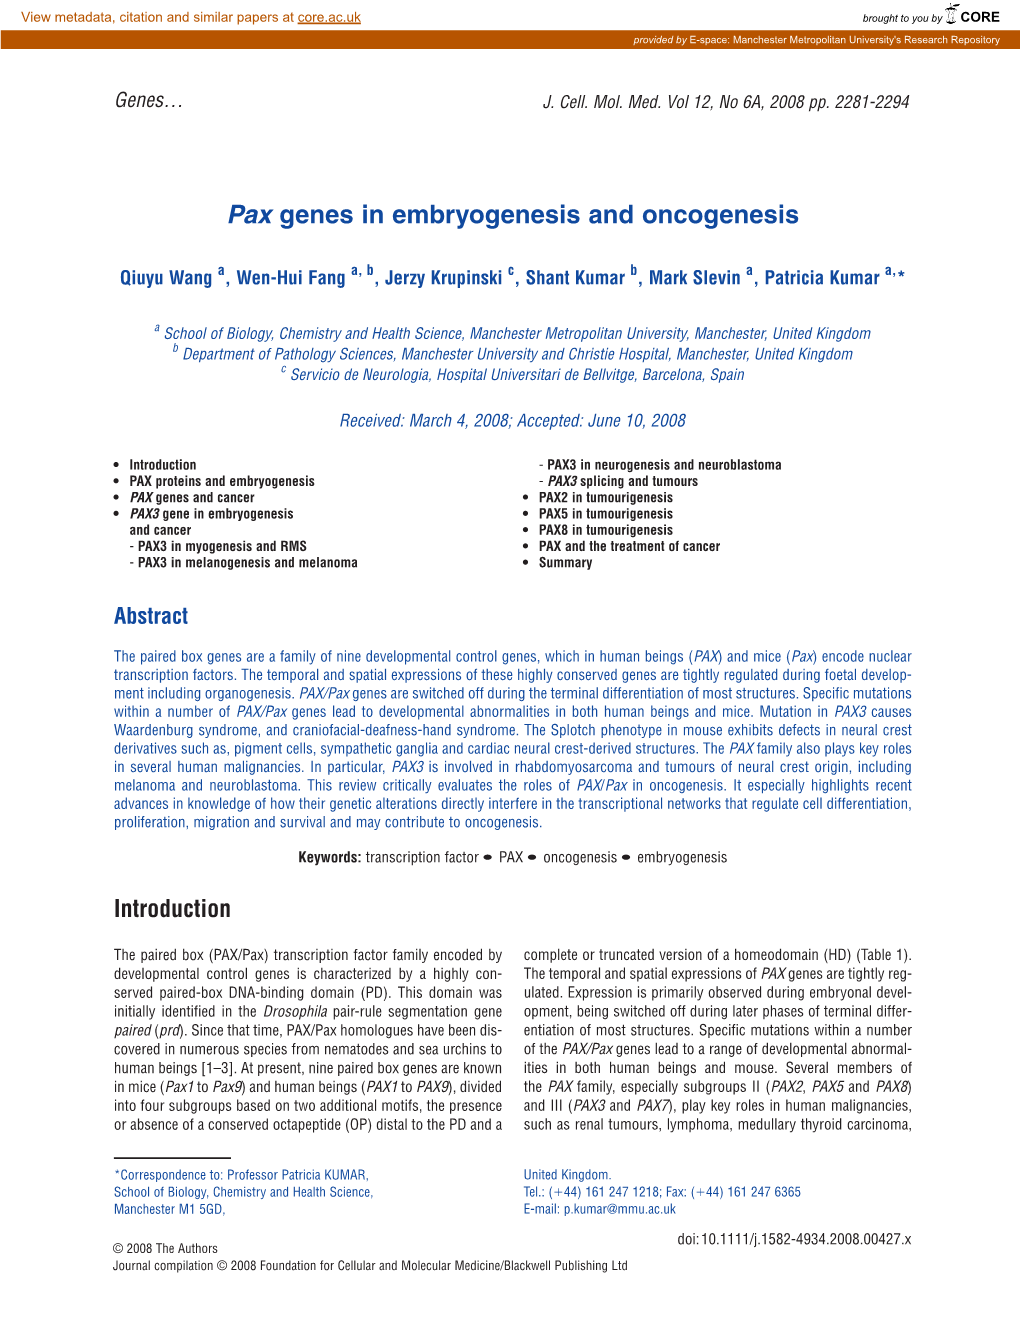 Pax Genes in Embryogenesis and Oncogenesis